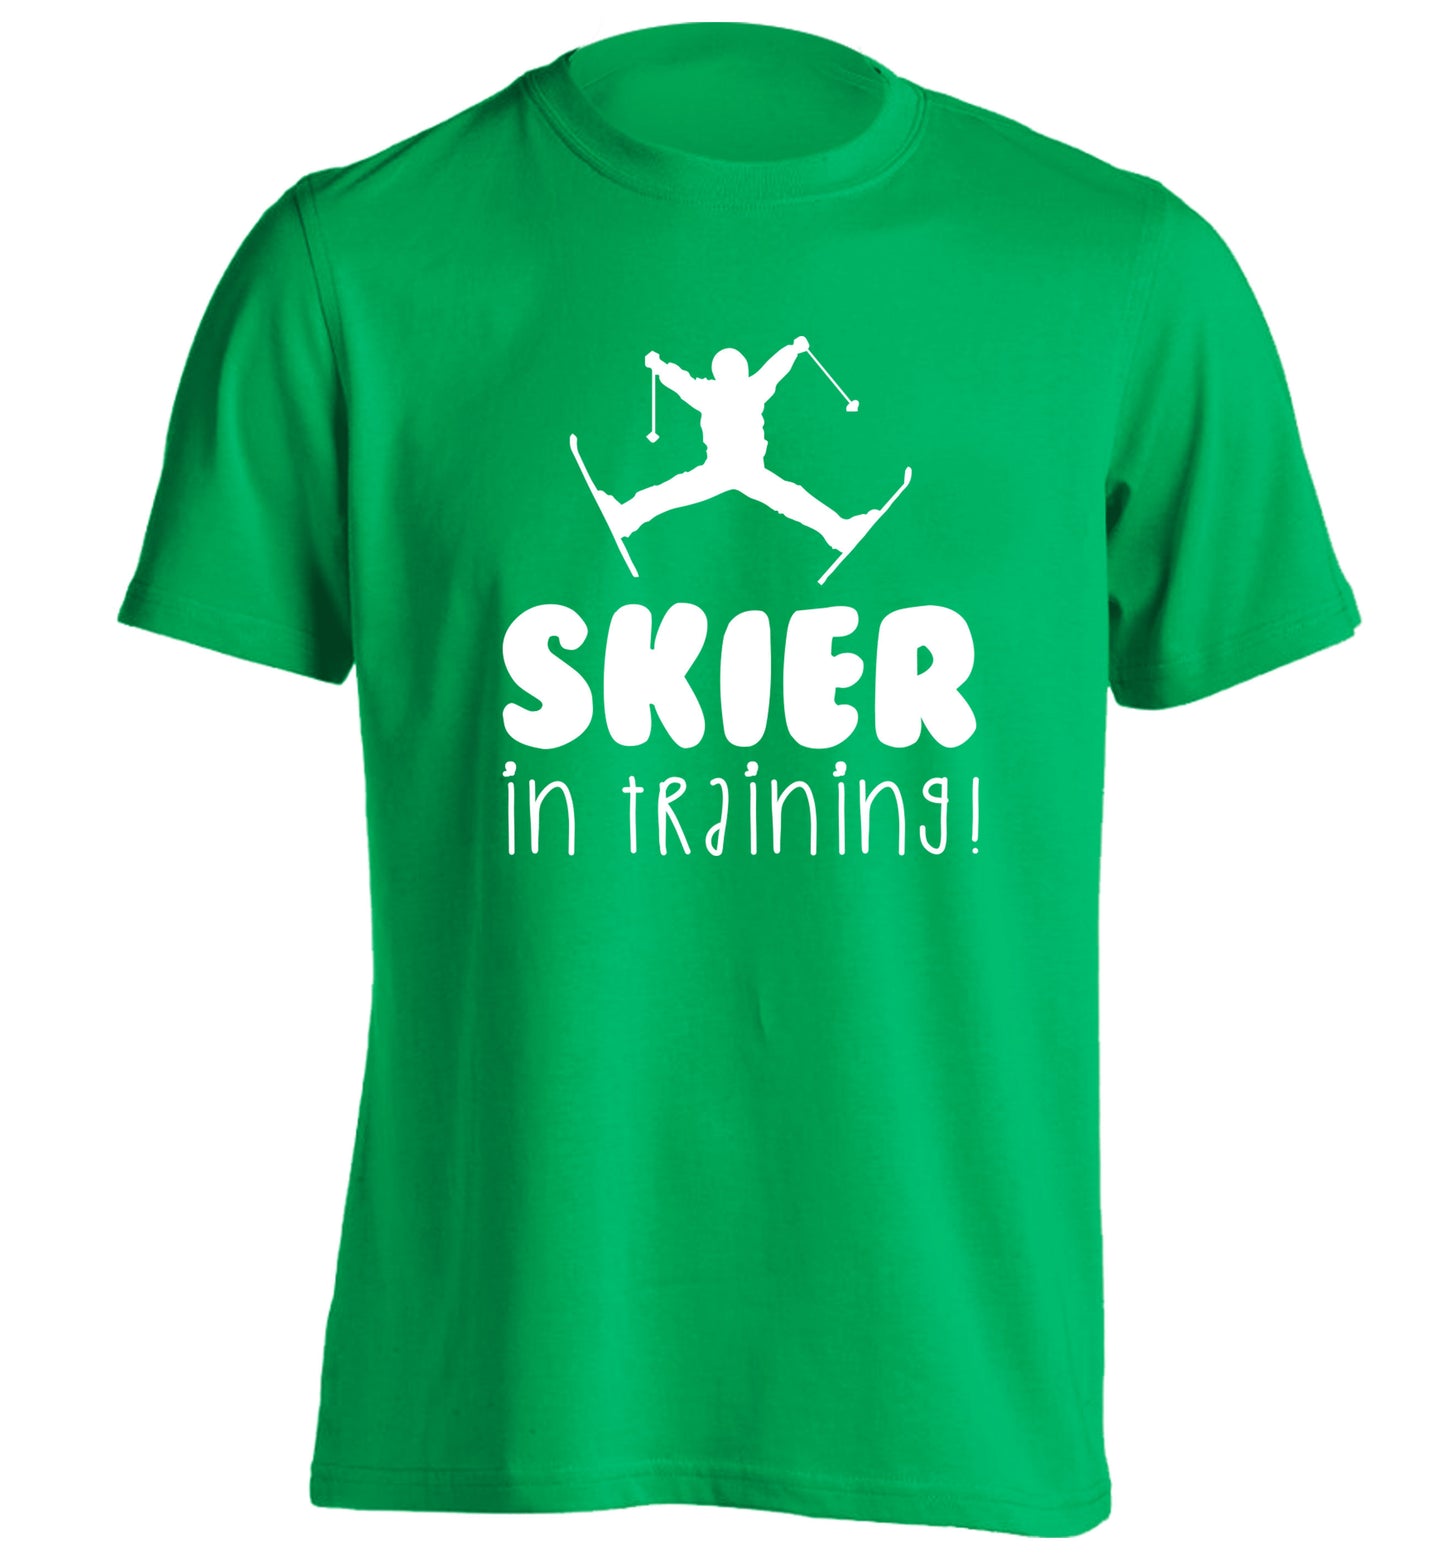 Skier in training adults unisex green Tshirt 2XL